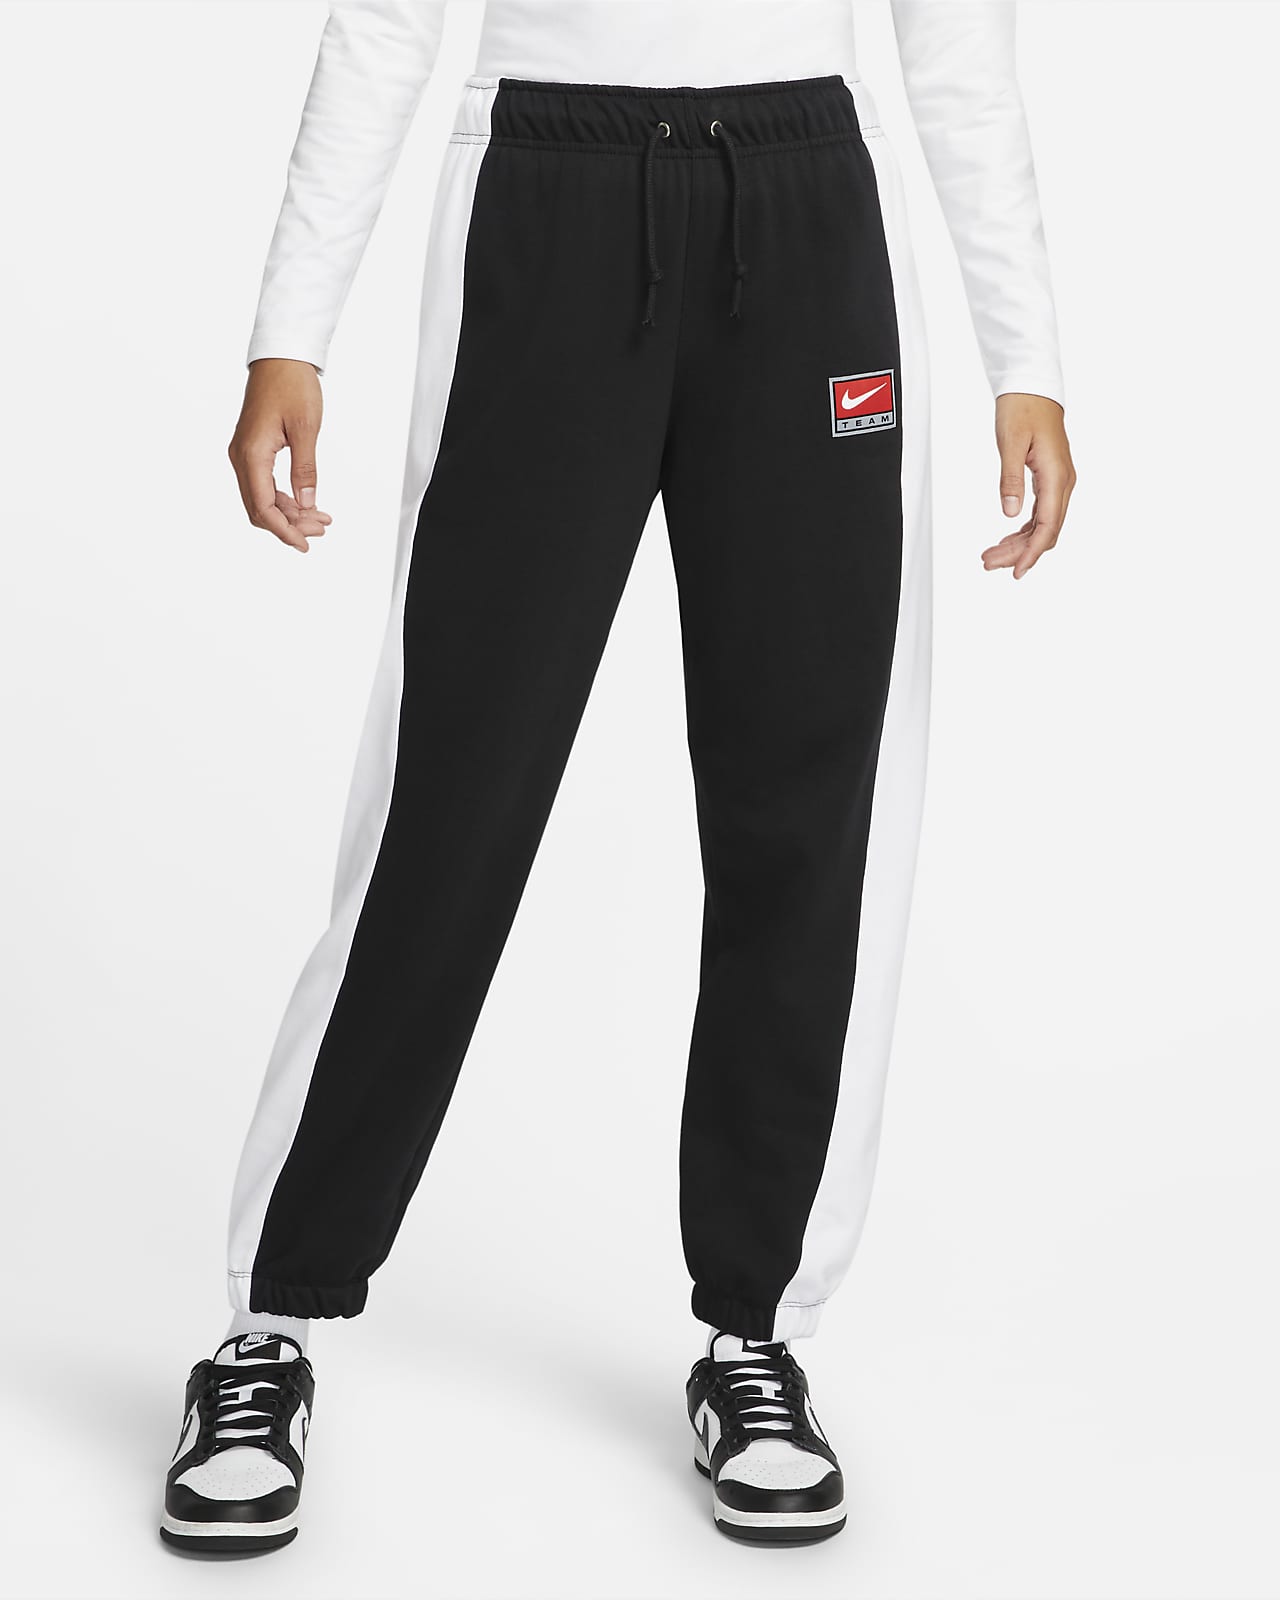 Pants de tejido Fleece mujer Nike Sportswear Team Nike.com